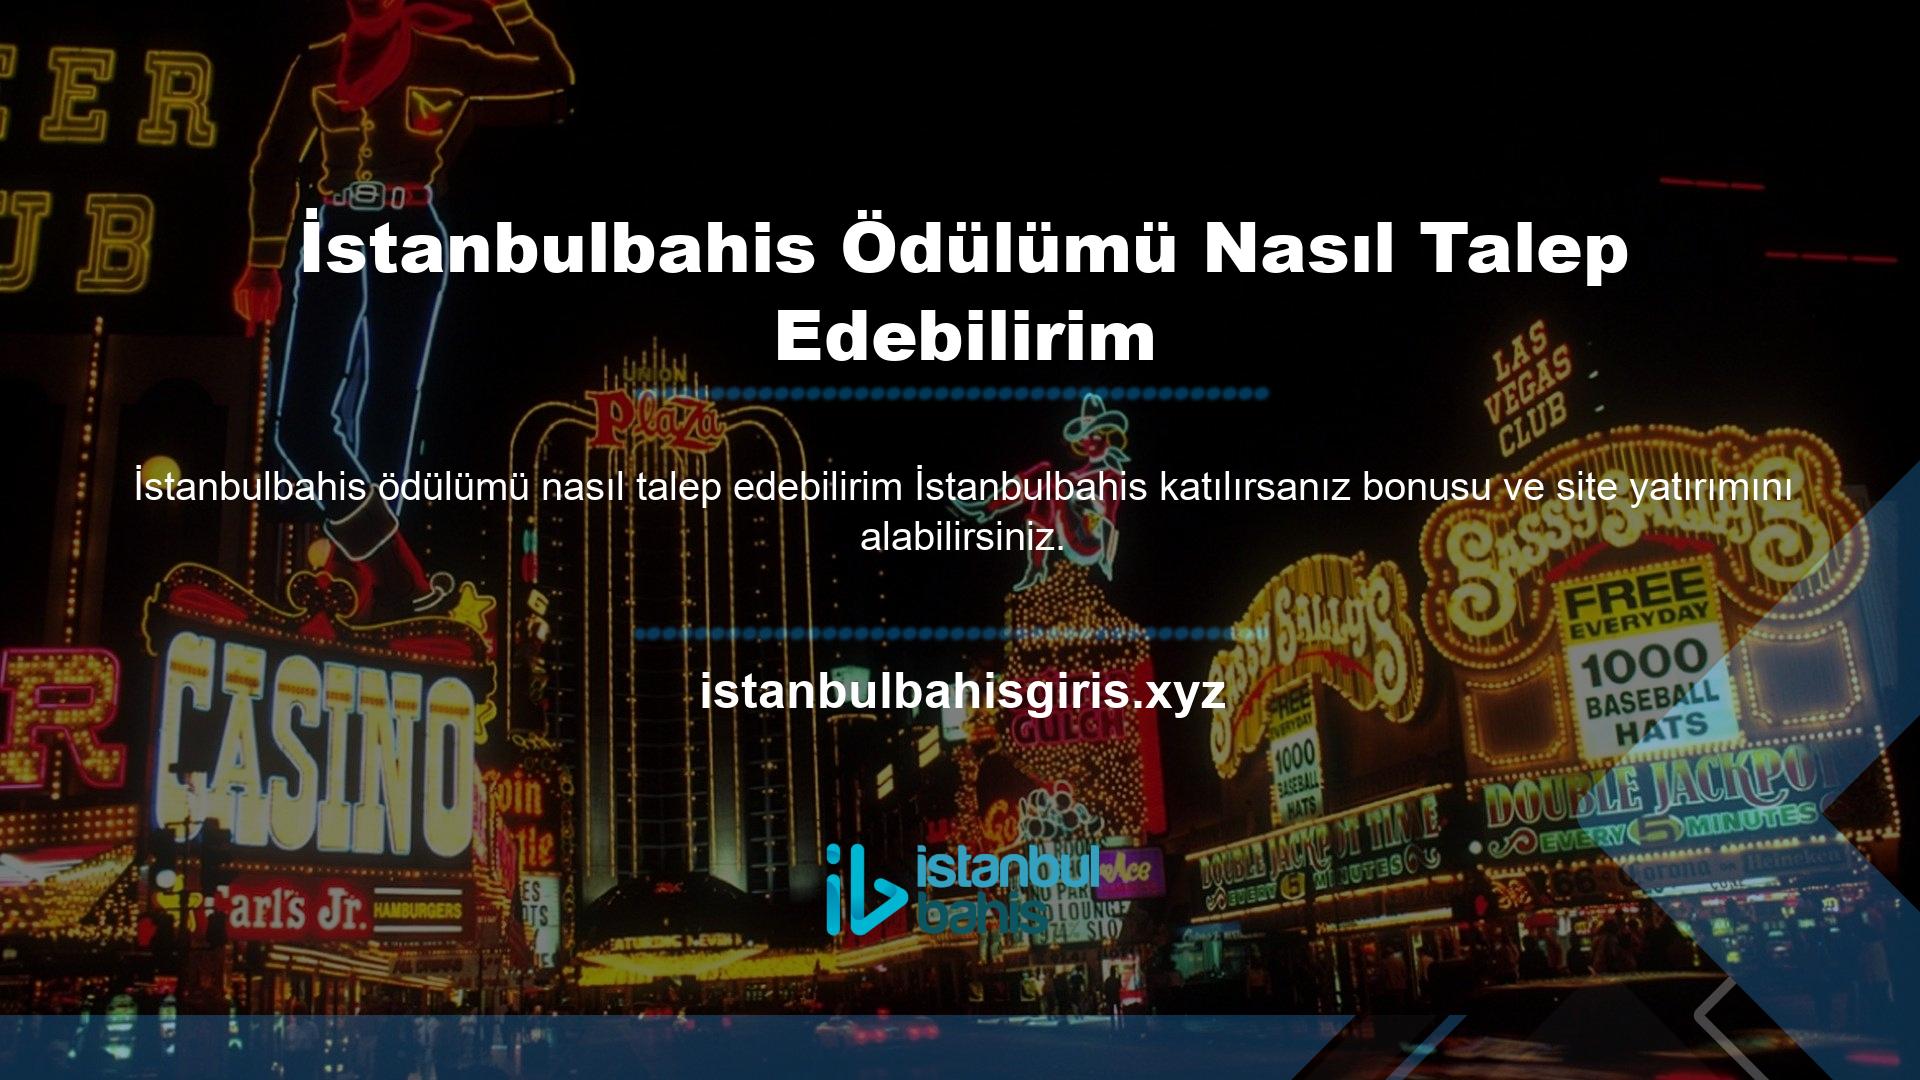 İstanbulbahis bonusu sunmayan bu site, yatırımlarınızdan para kazanmanızı sağlar